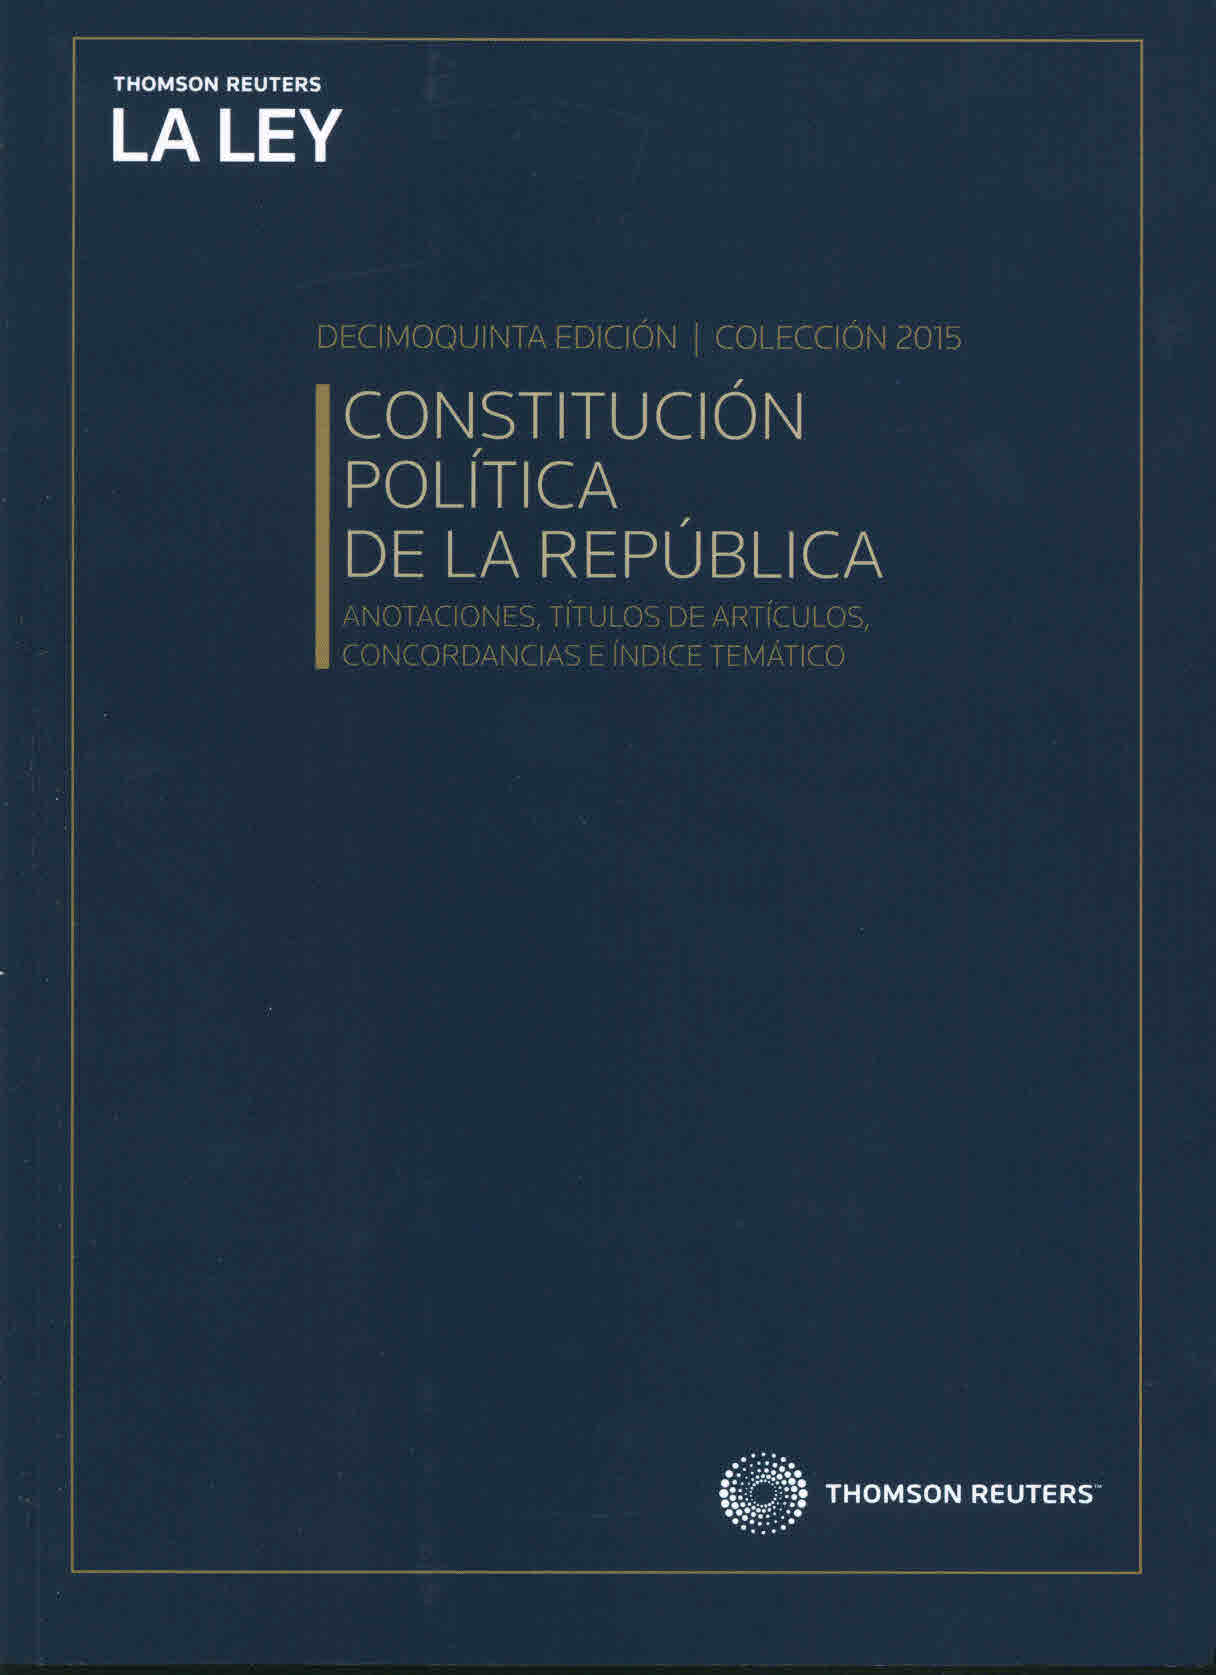 Constitución Política de la República de Chile: Anotaciones, títulos de artículos, concordancias e índice temático